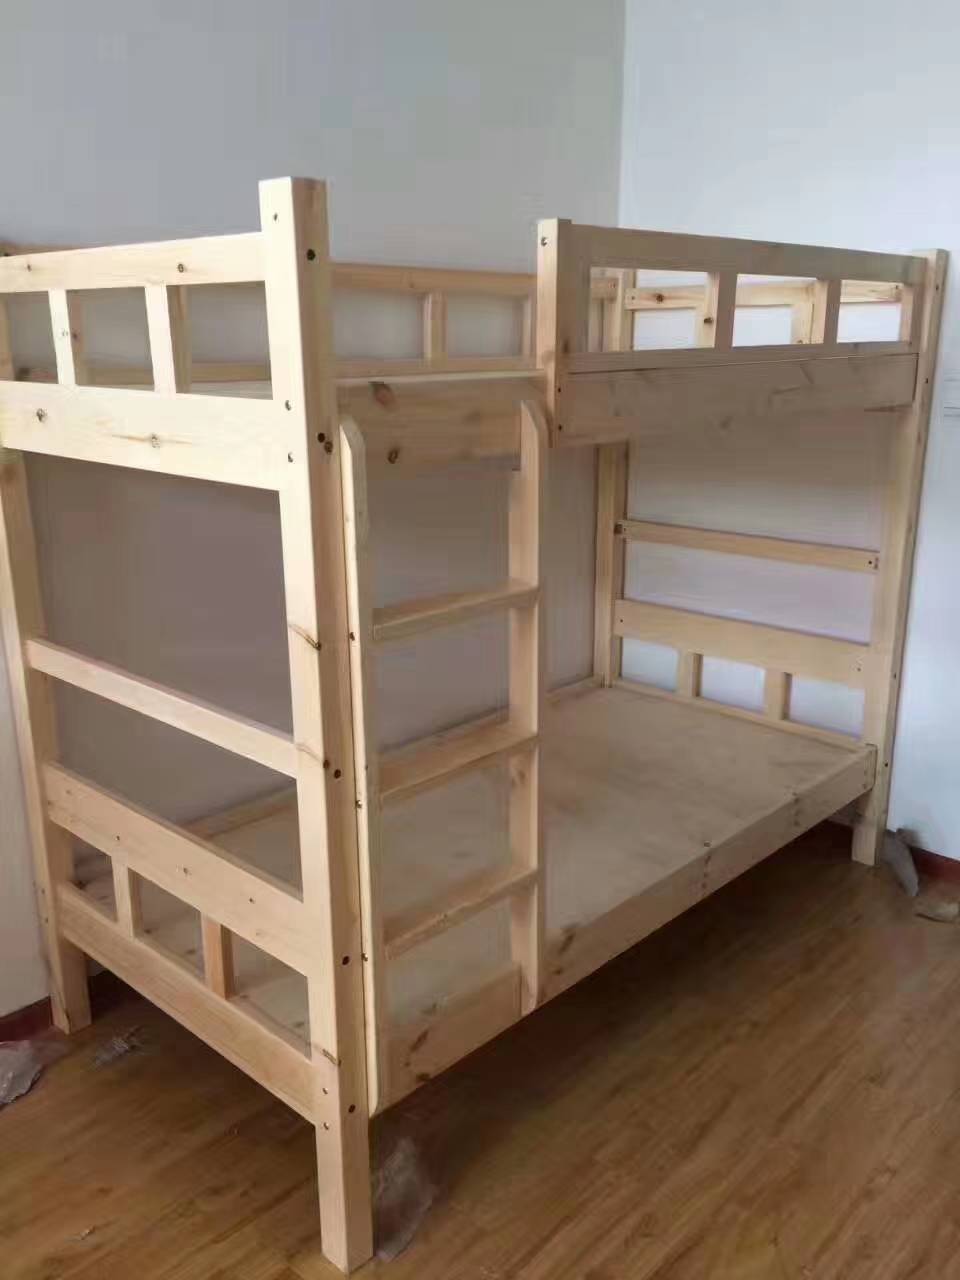 太原学生公寓寝室不锈钢上下床厂家众思创家具